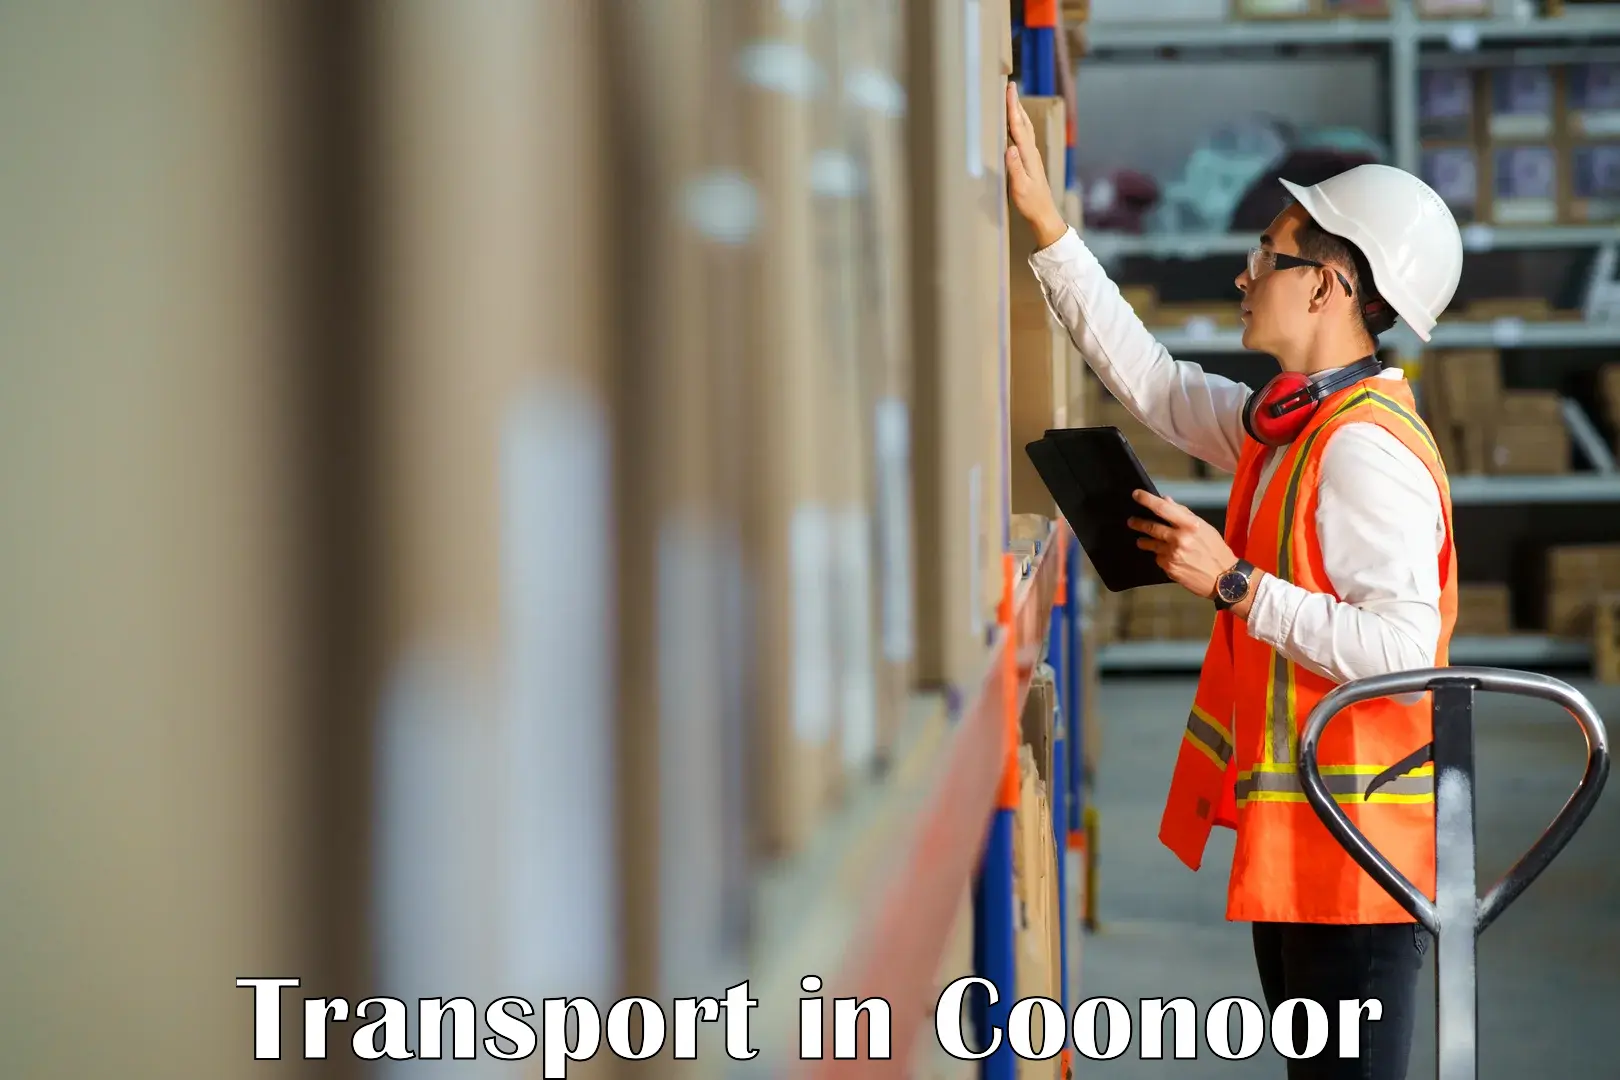 Interstate goods transport in Coonoor